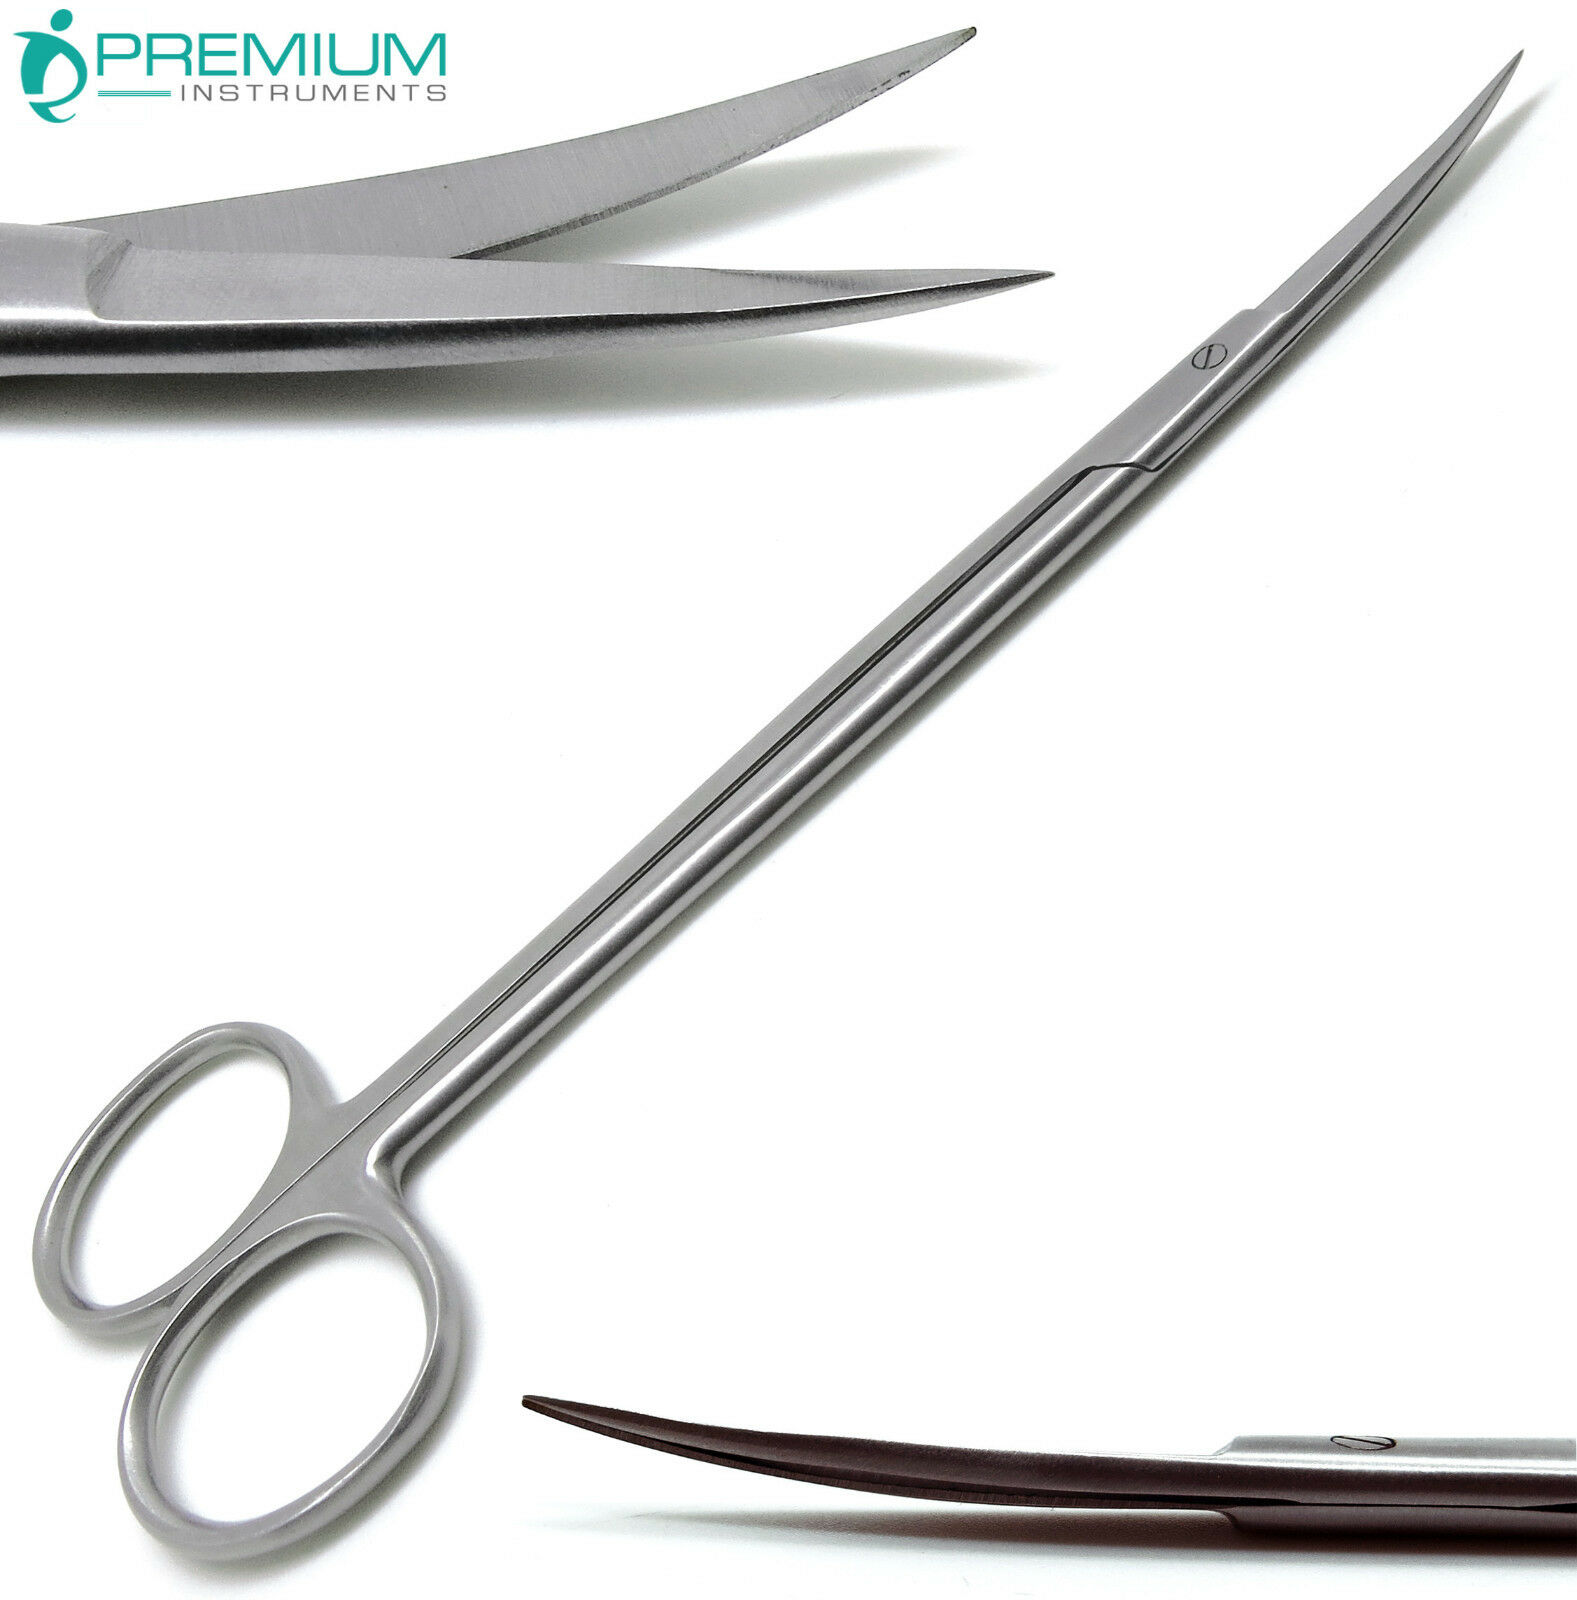 Dental Surgical Medical Ent Scissors Kelly Curved 7" Sharp/sharp Instruments